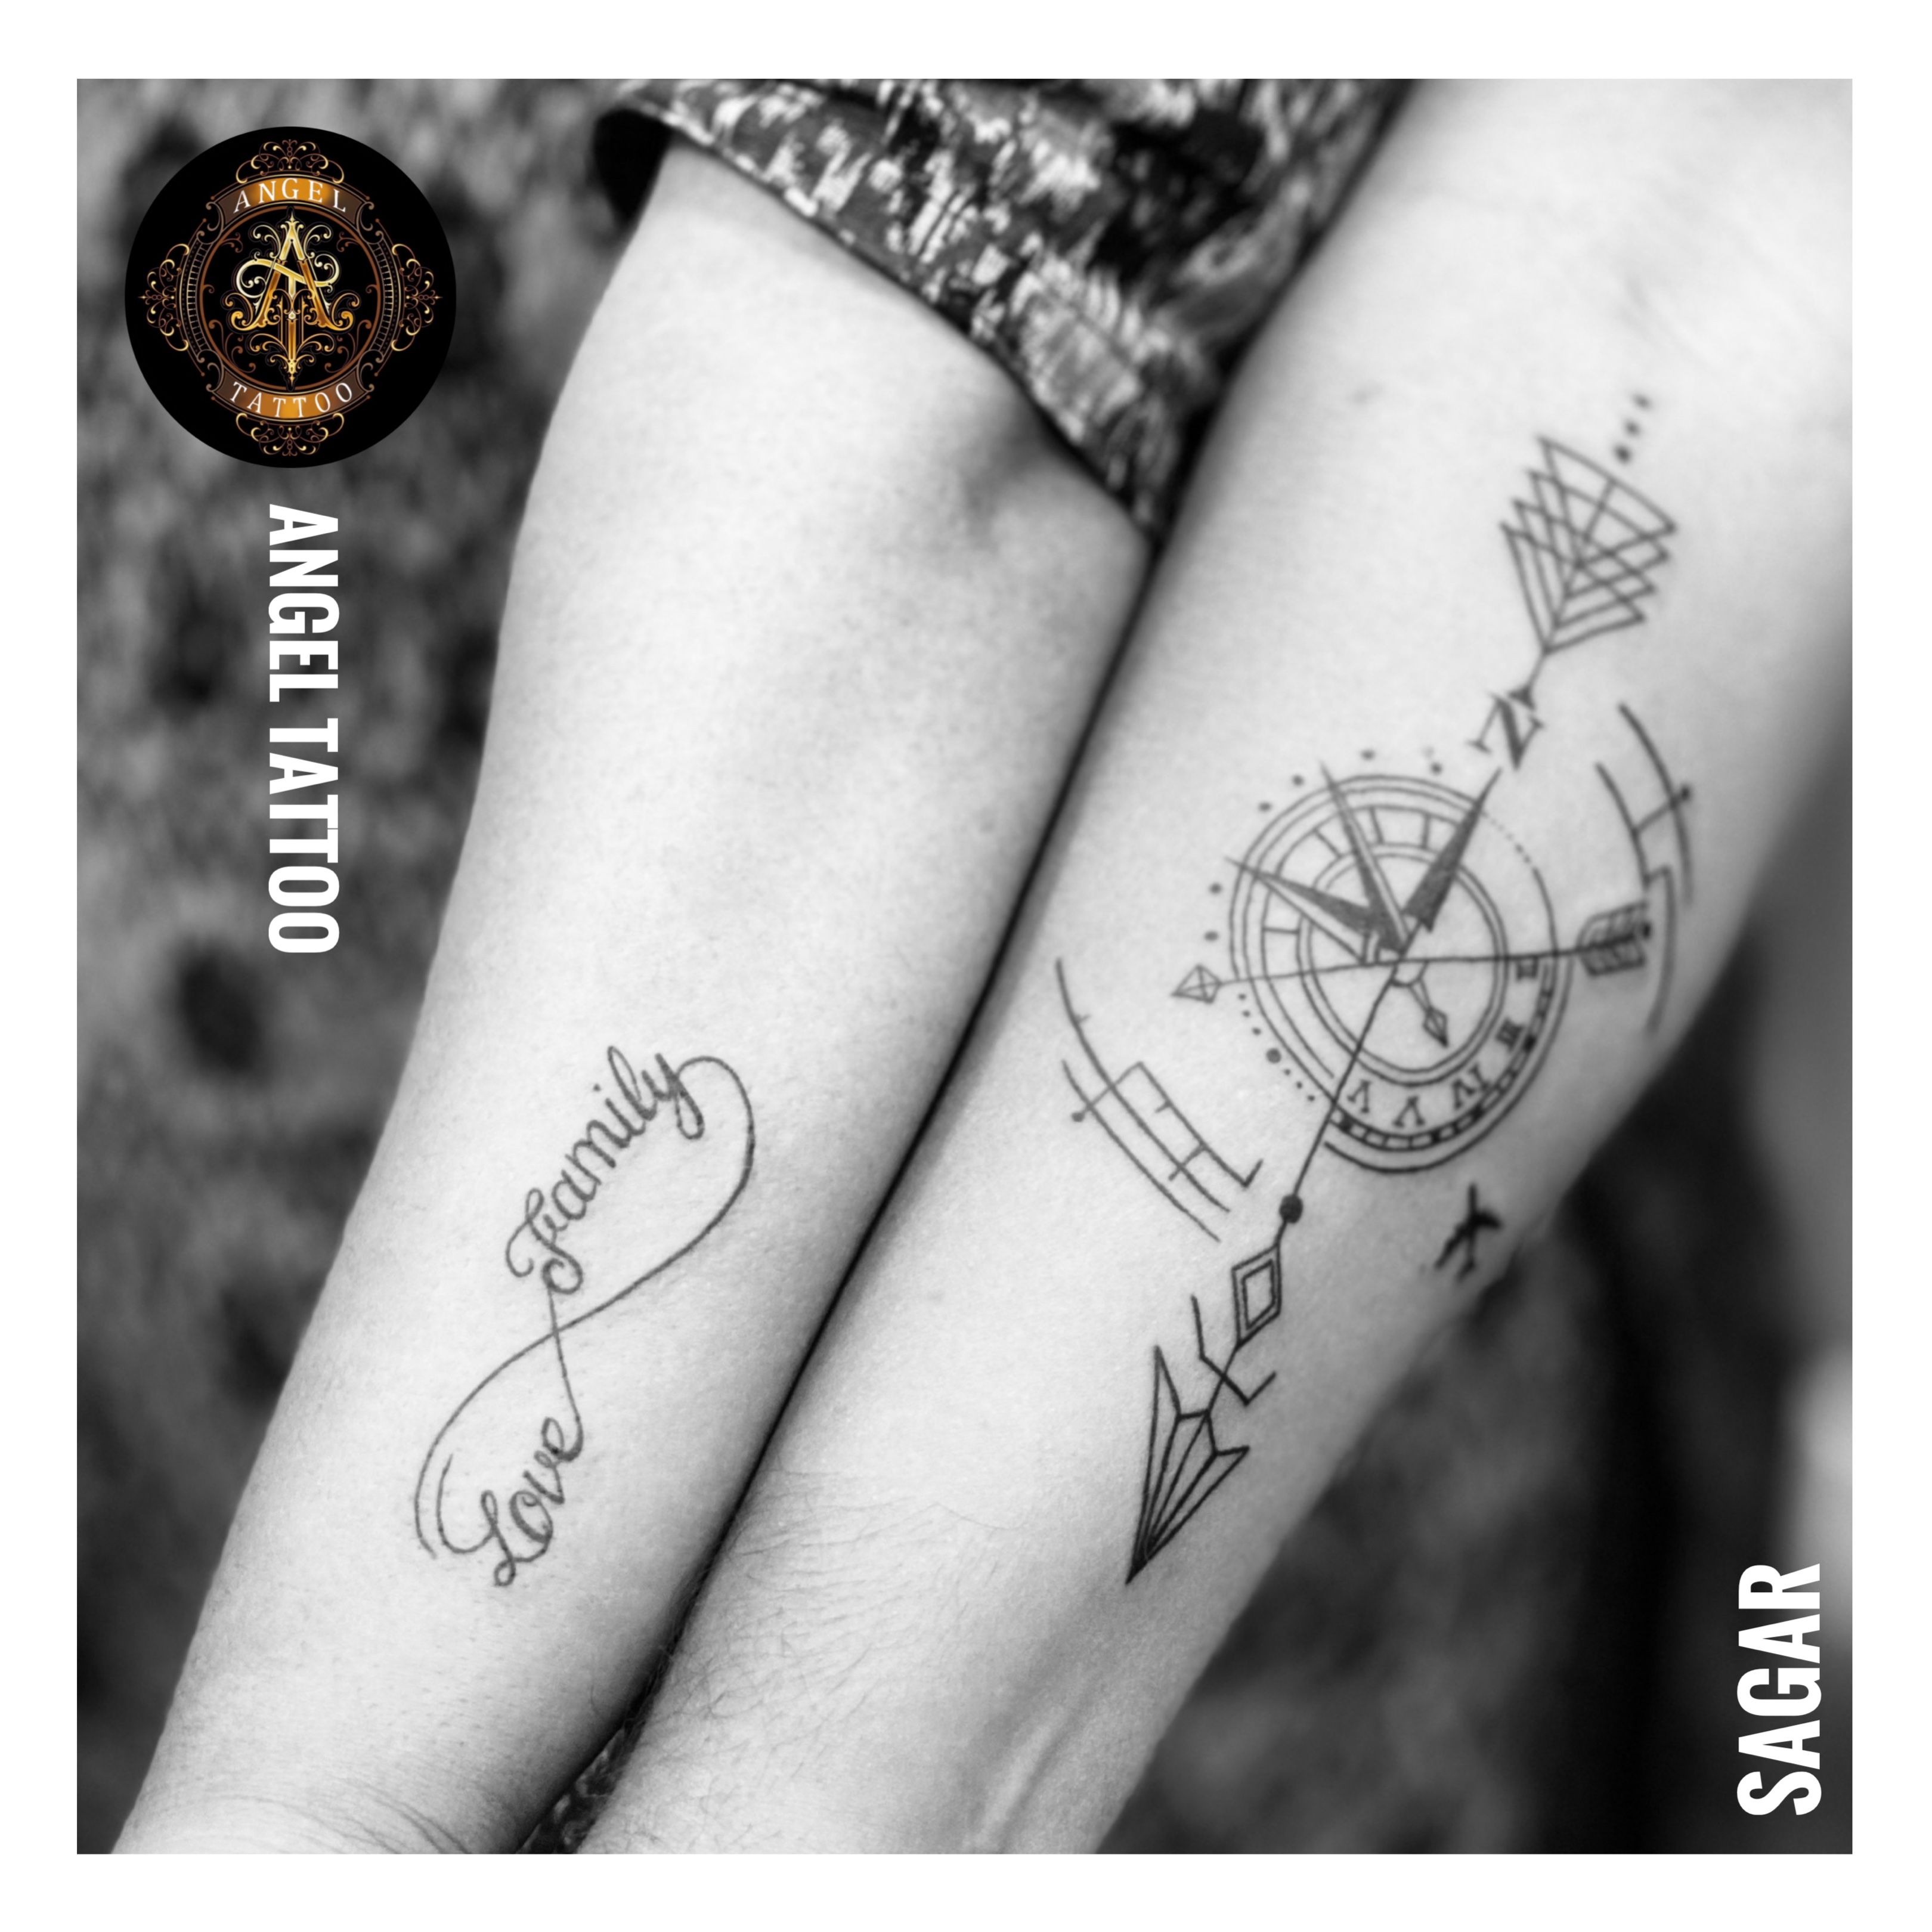 Recent work . #tattooing | Instagram